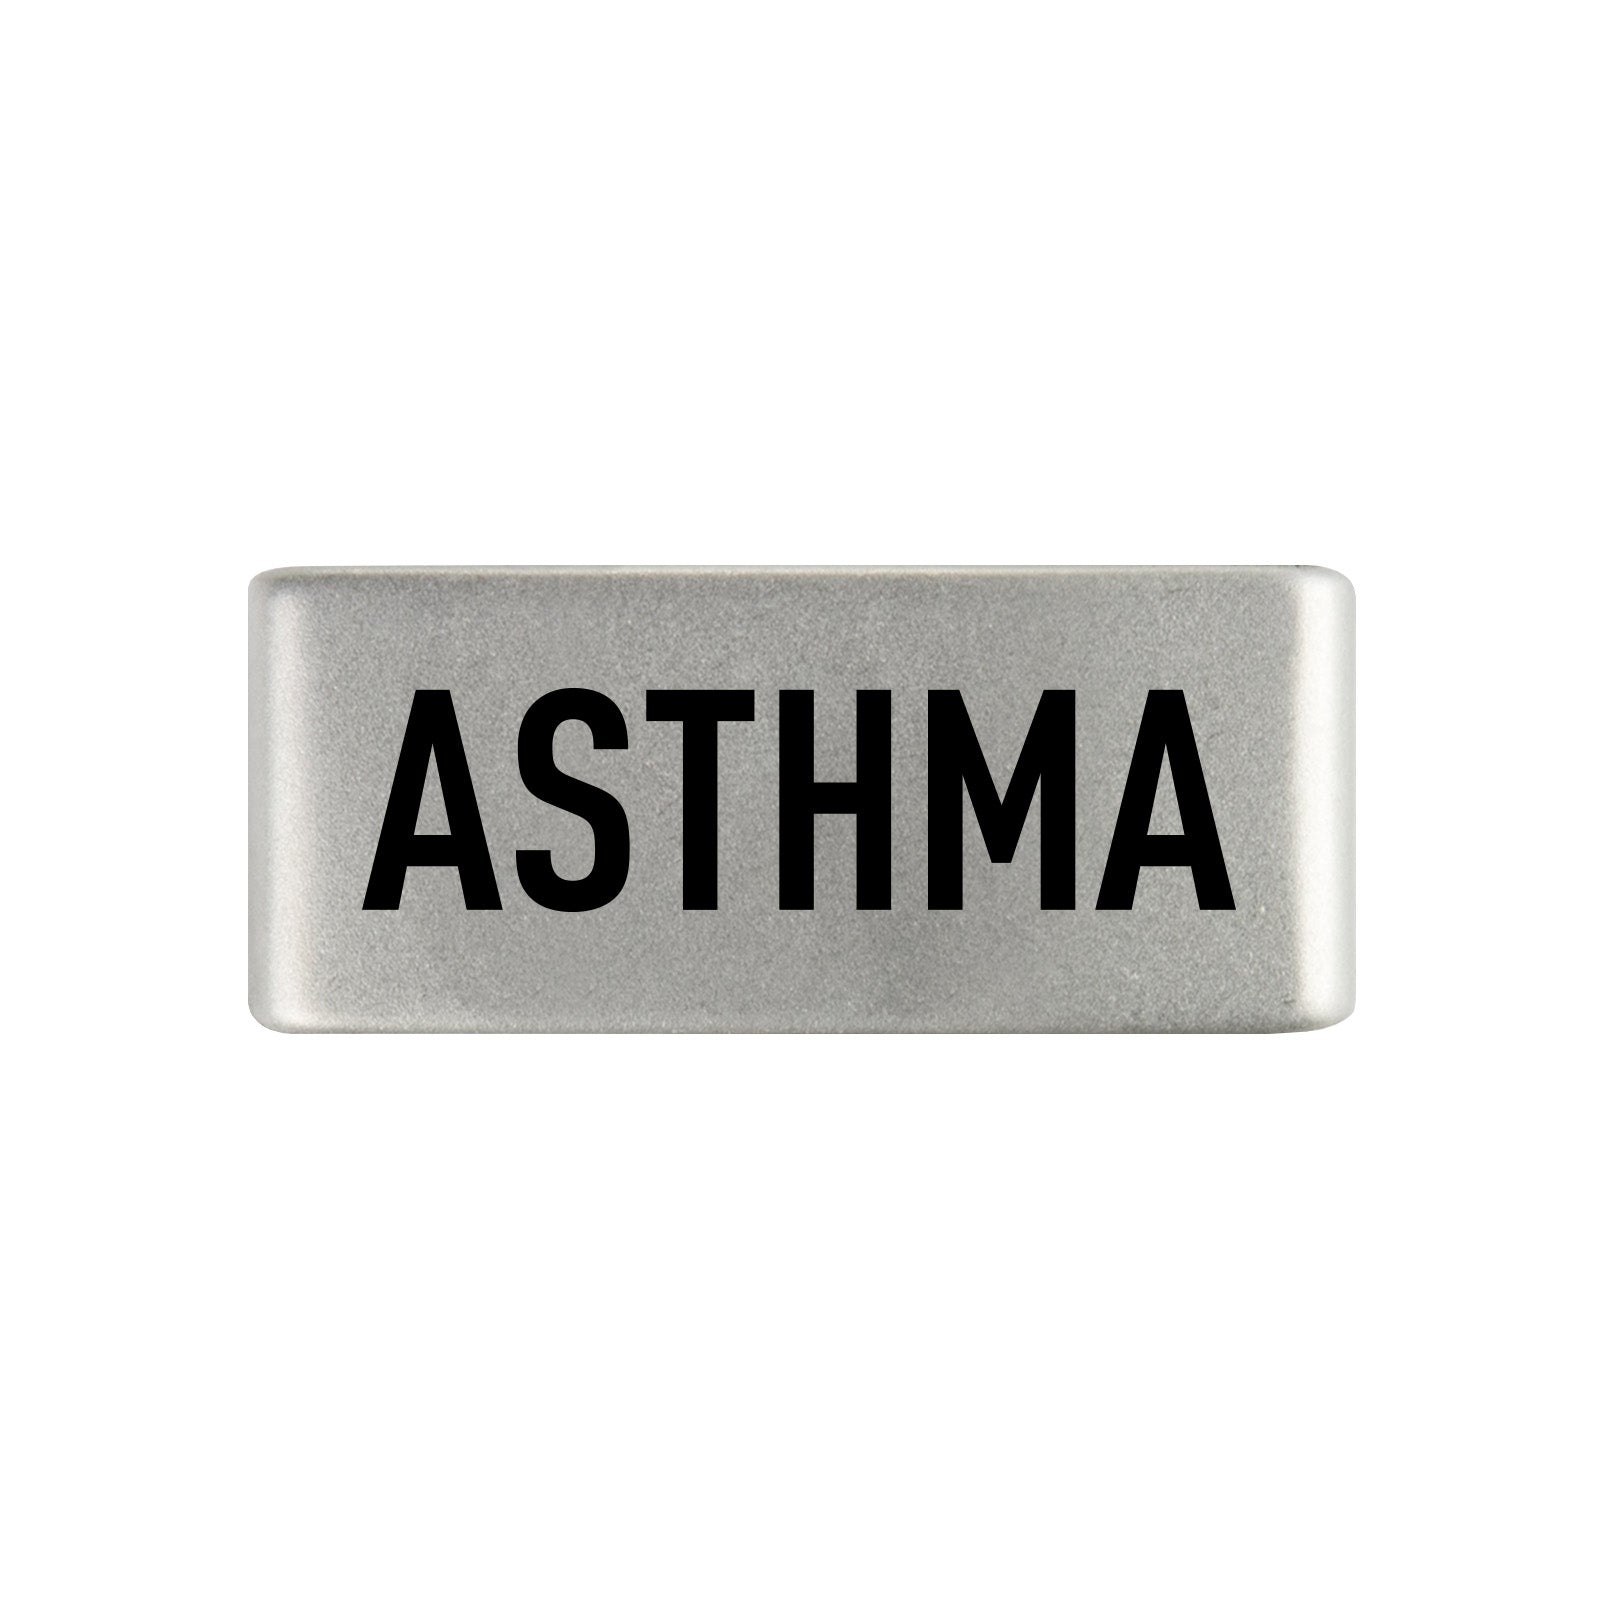 Asthma Badge Badge 13mm - ROAD iD